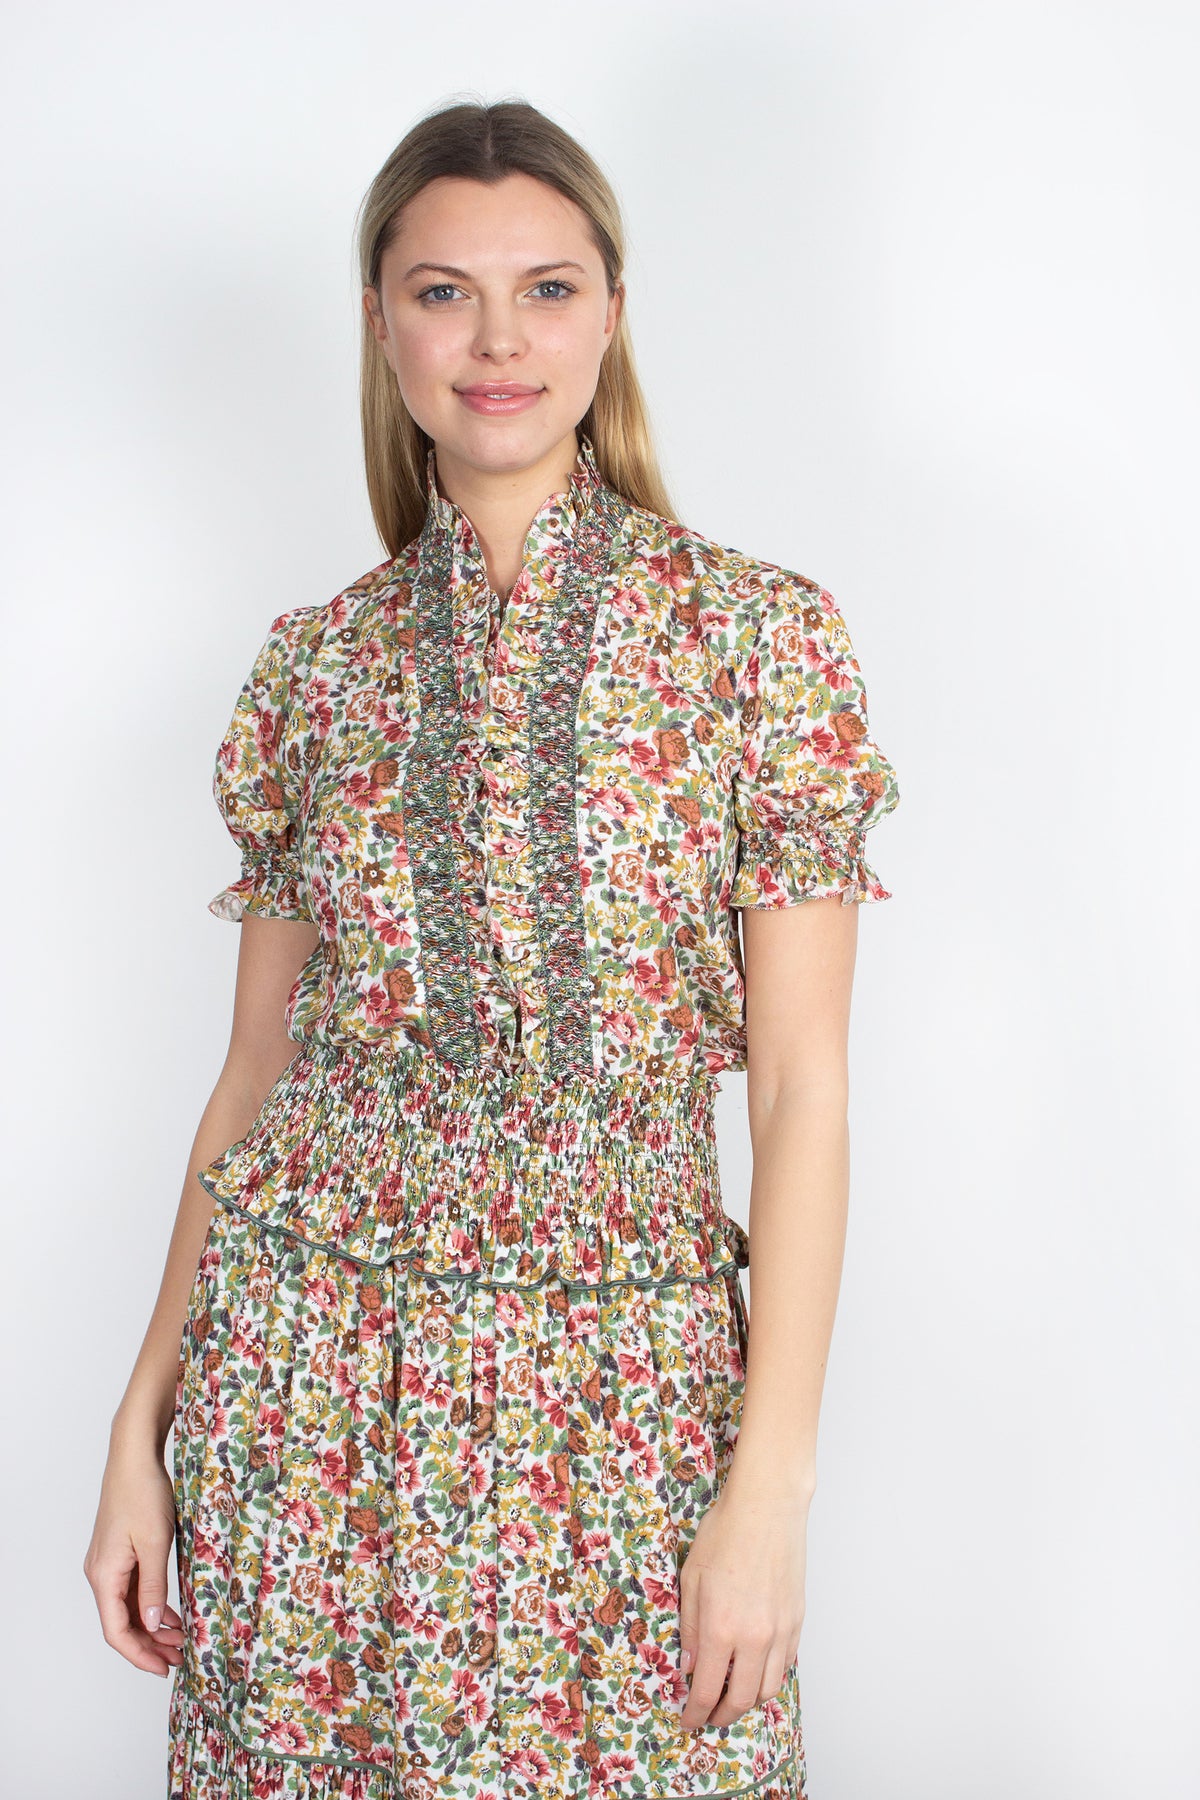 Loretta Caponi Donatella floral-print blouse